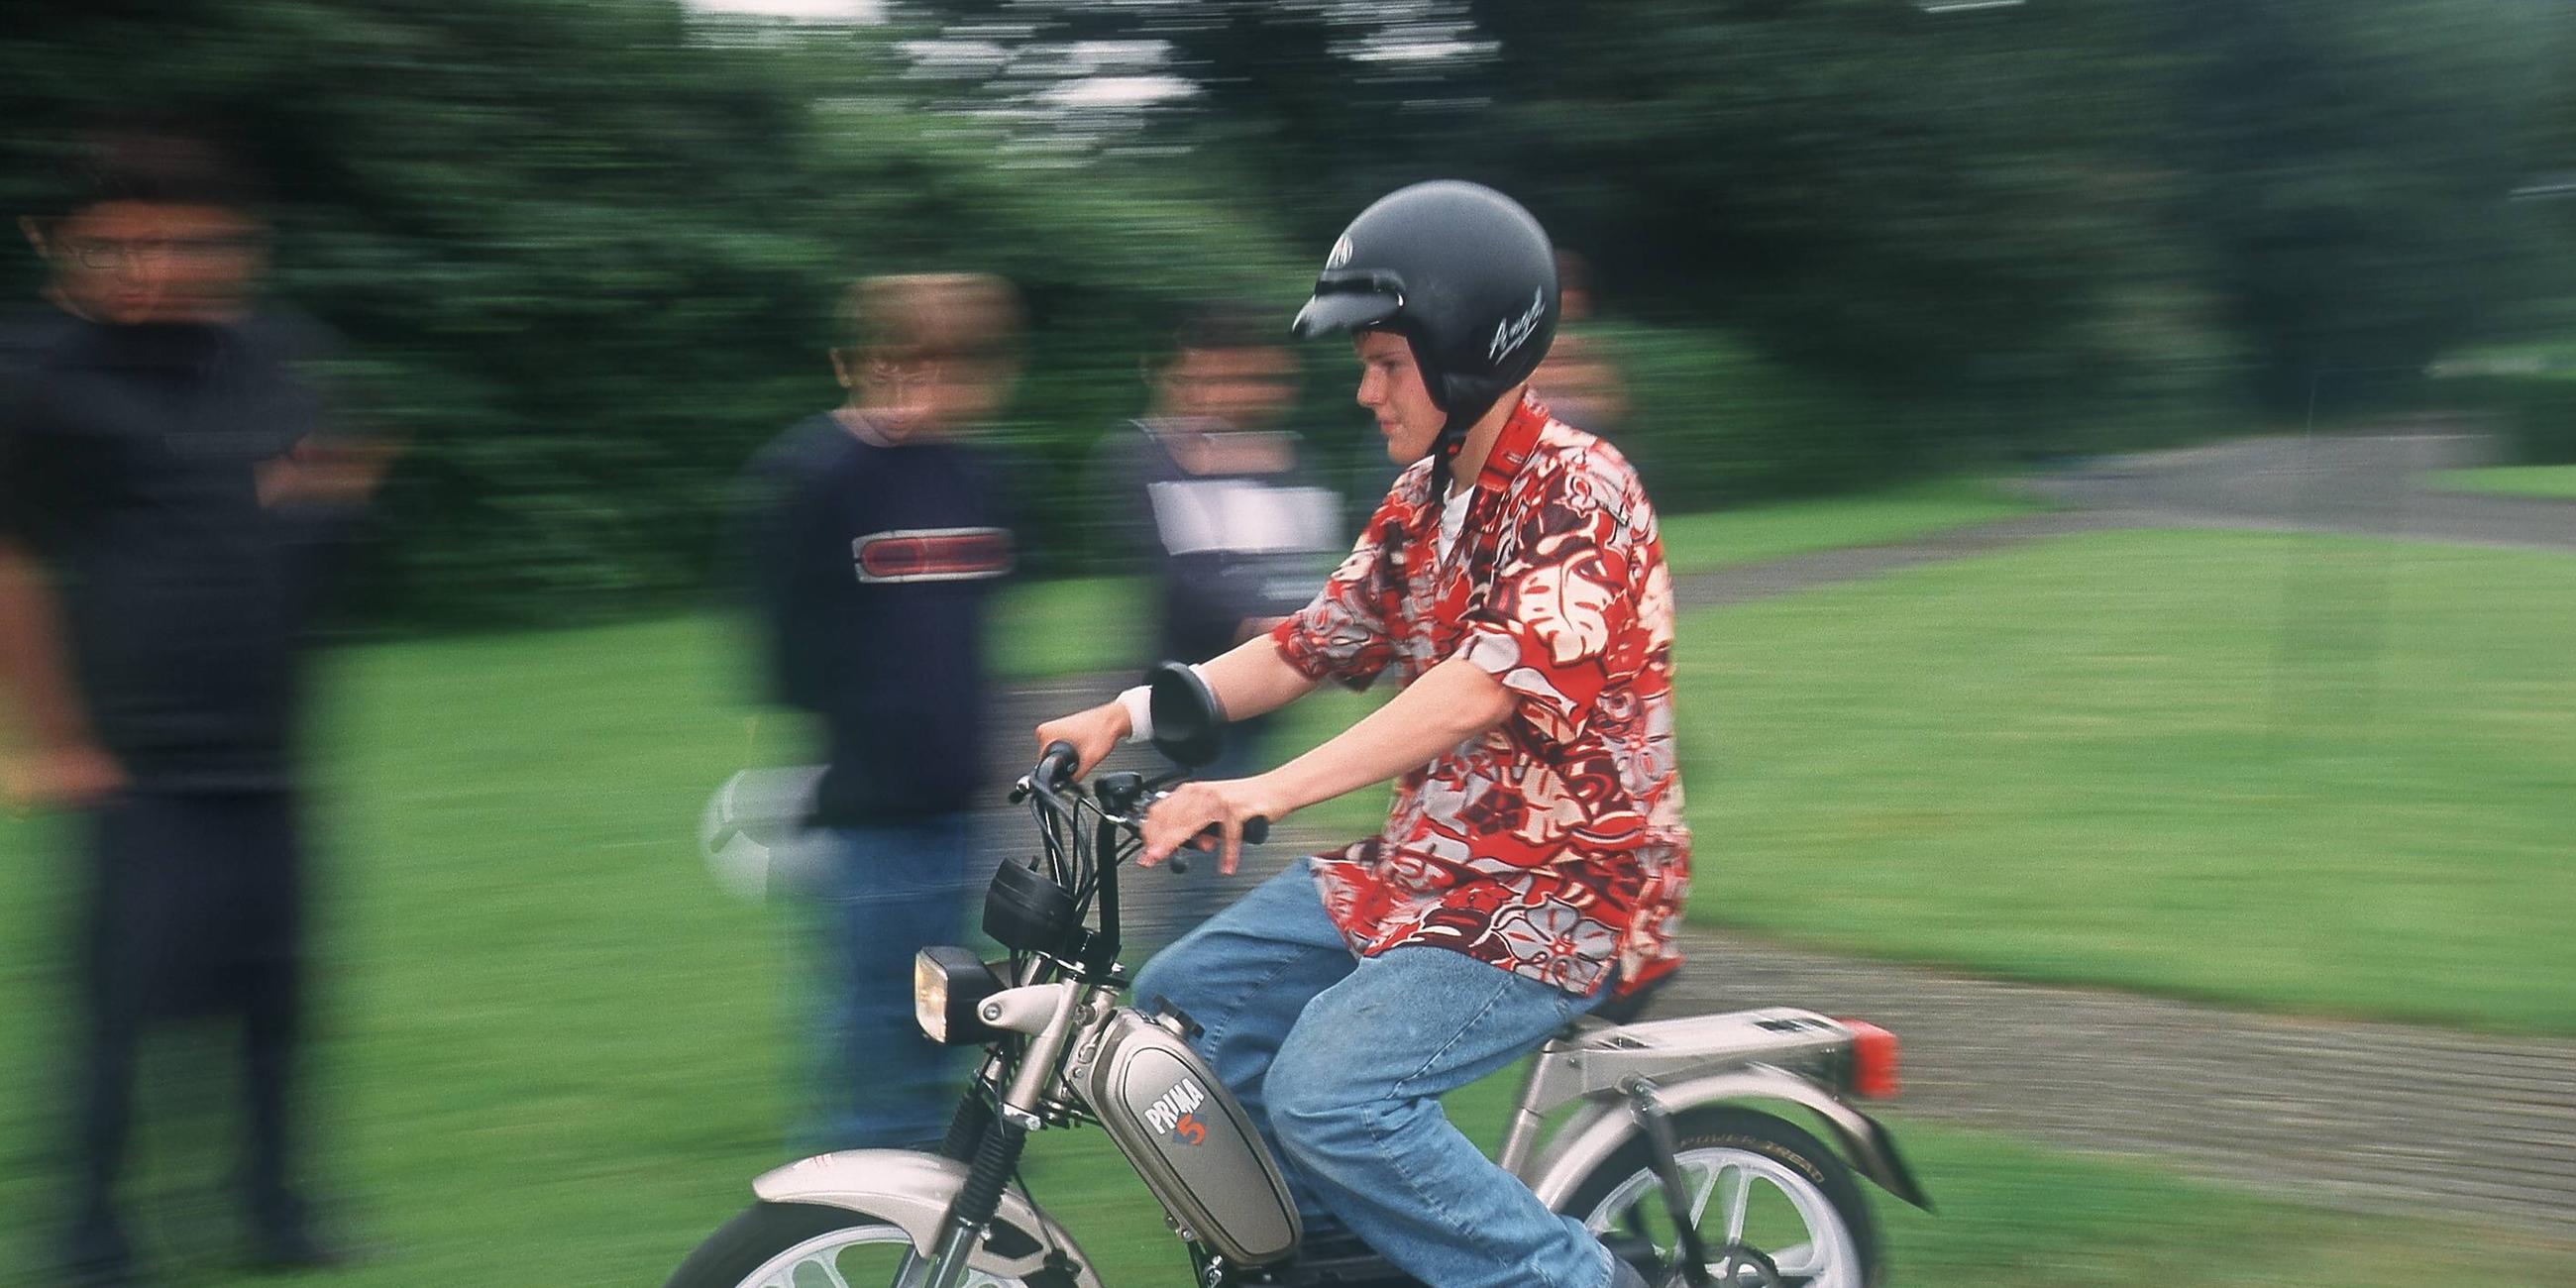 Jugendlicher fährt im Sommer 2002 auf einem Moped